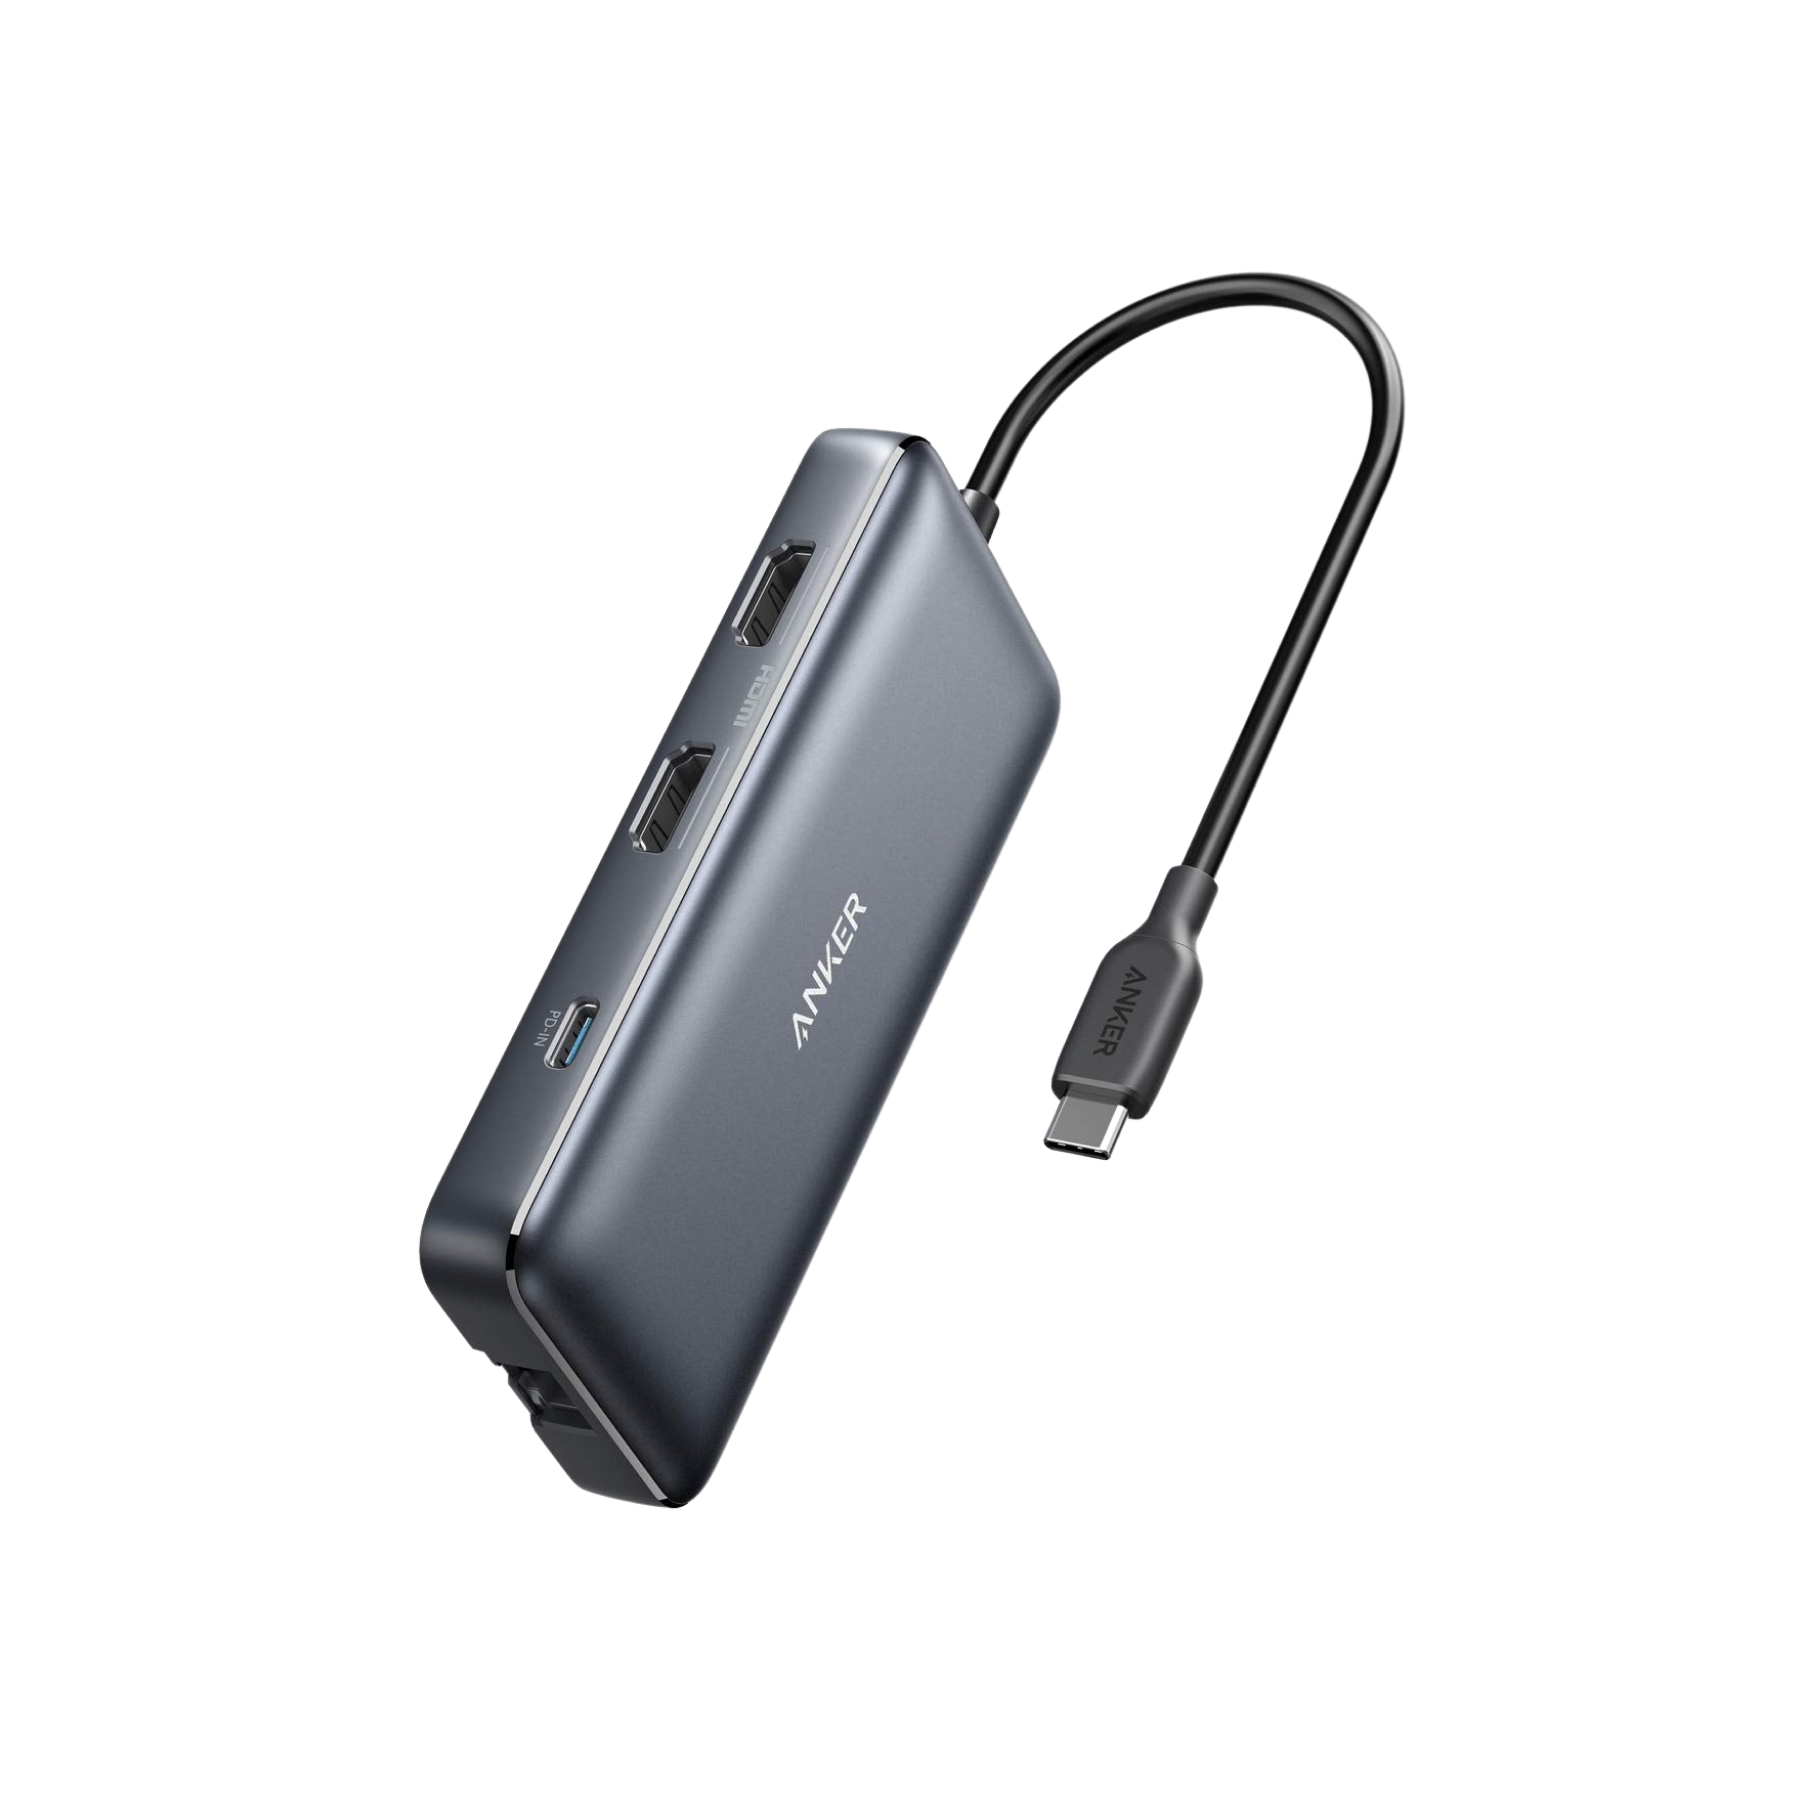 4-Port Ultra Slim USB 3.0 Data Hub - Anker UK